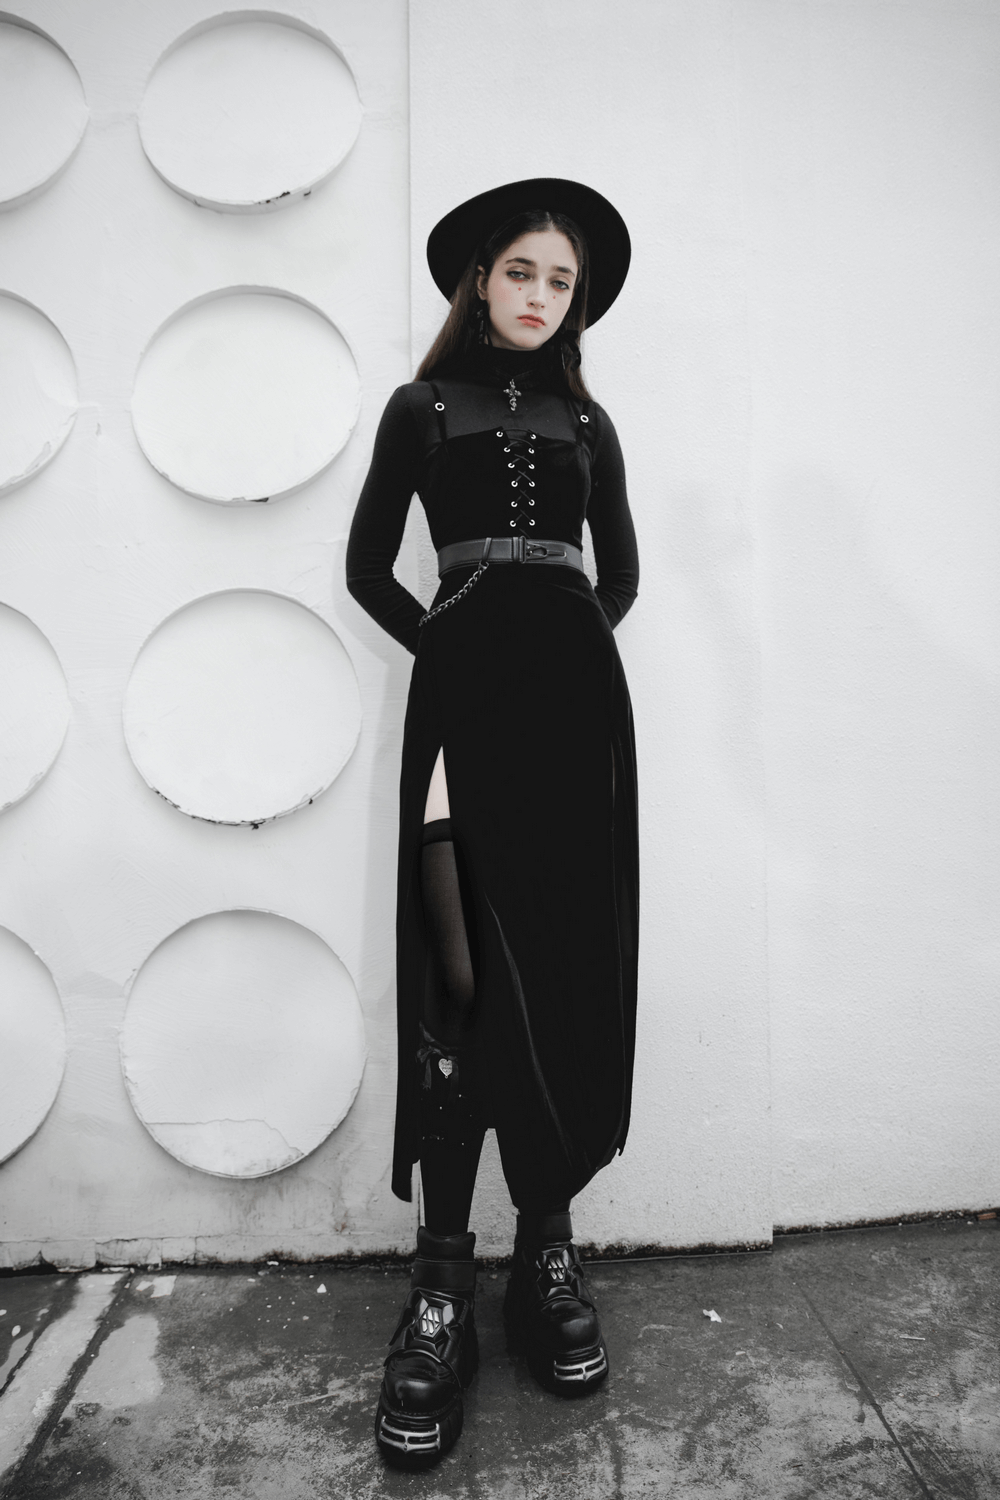 Gothic Women's Velvet Long Dress with Suspenders